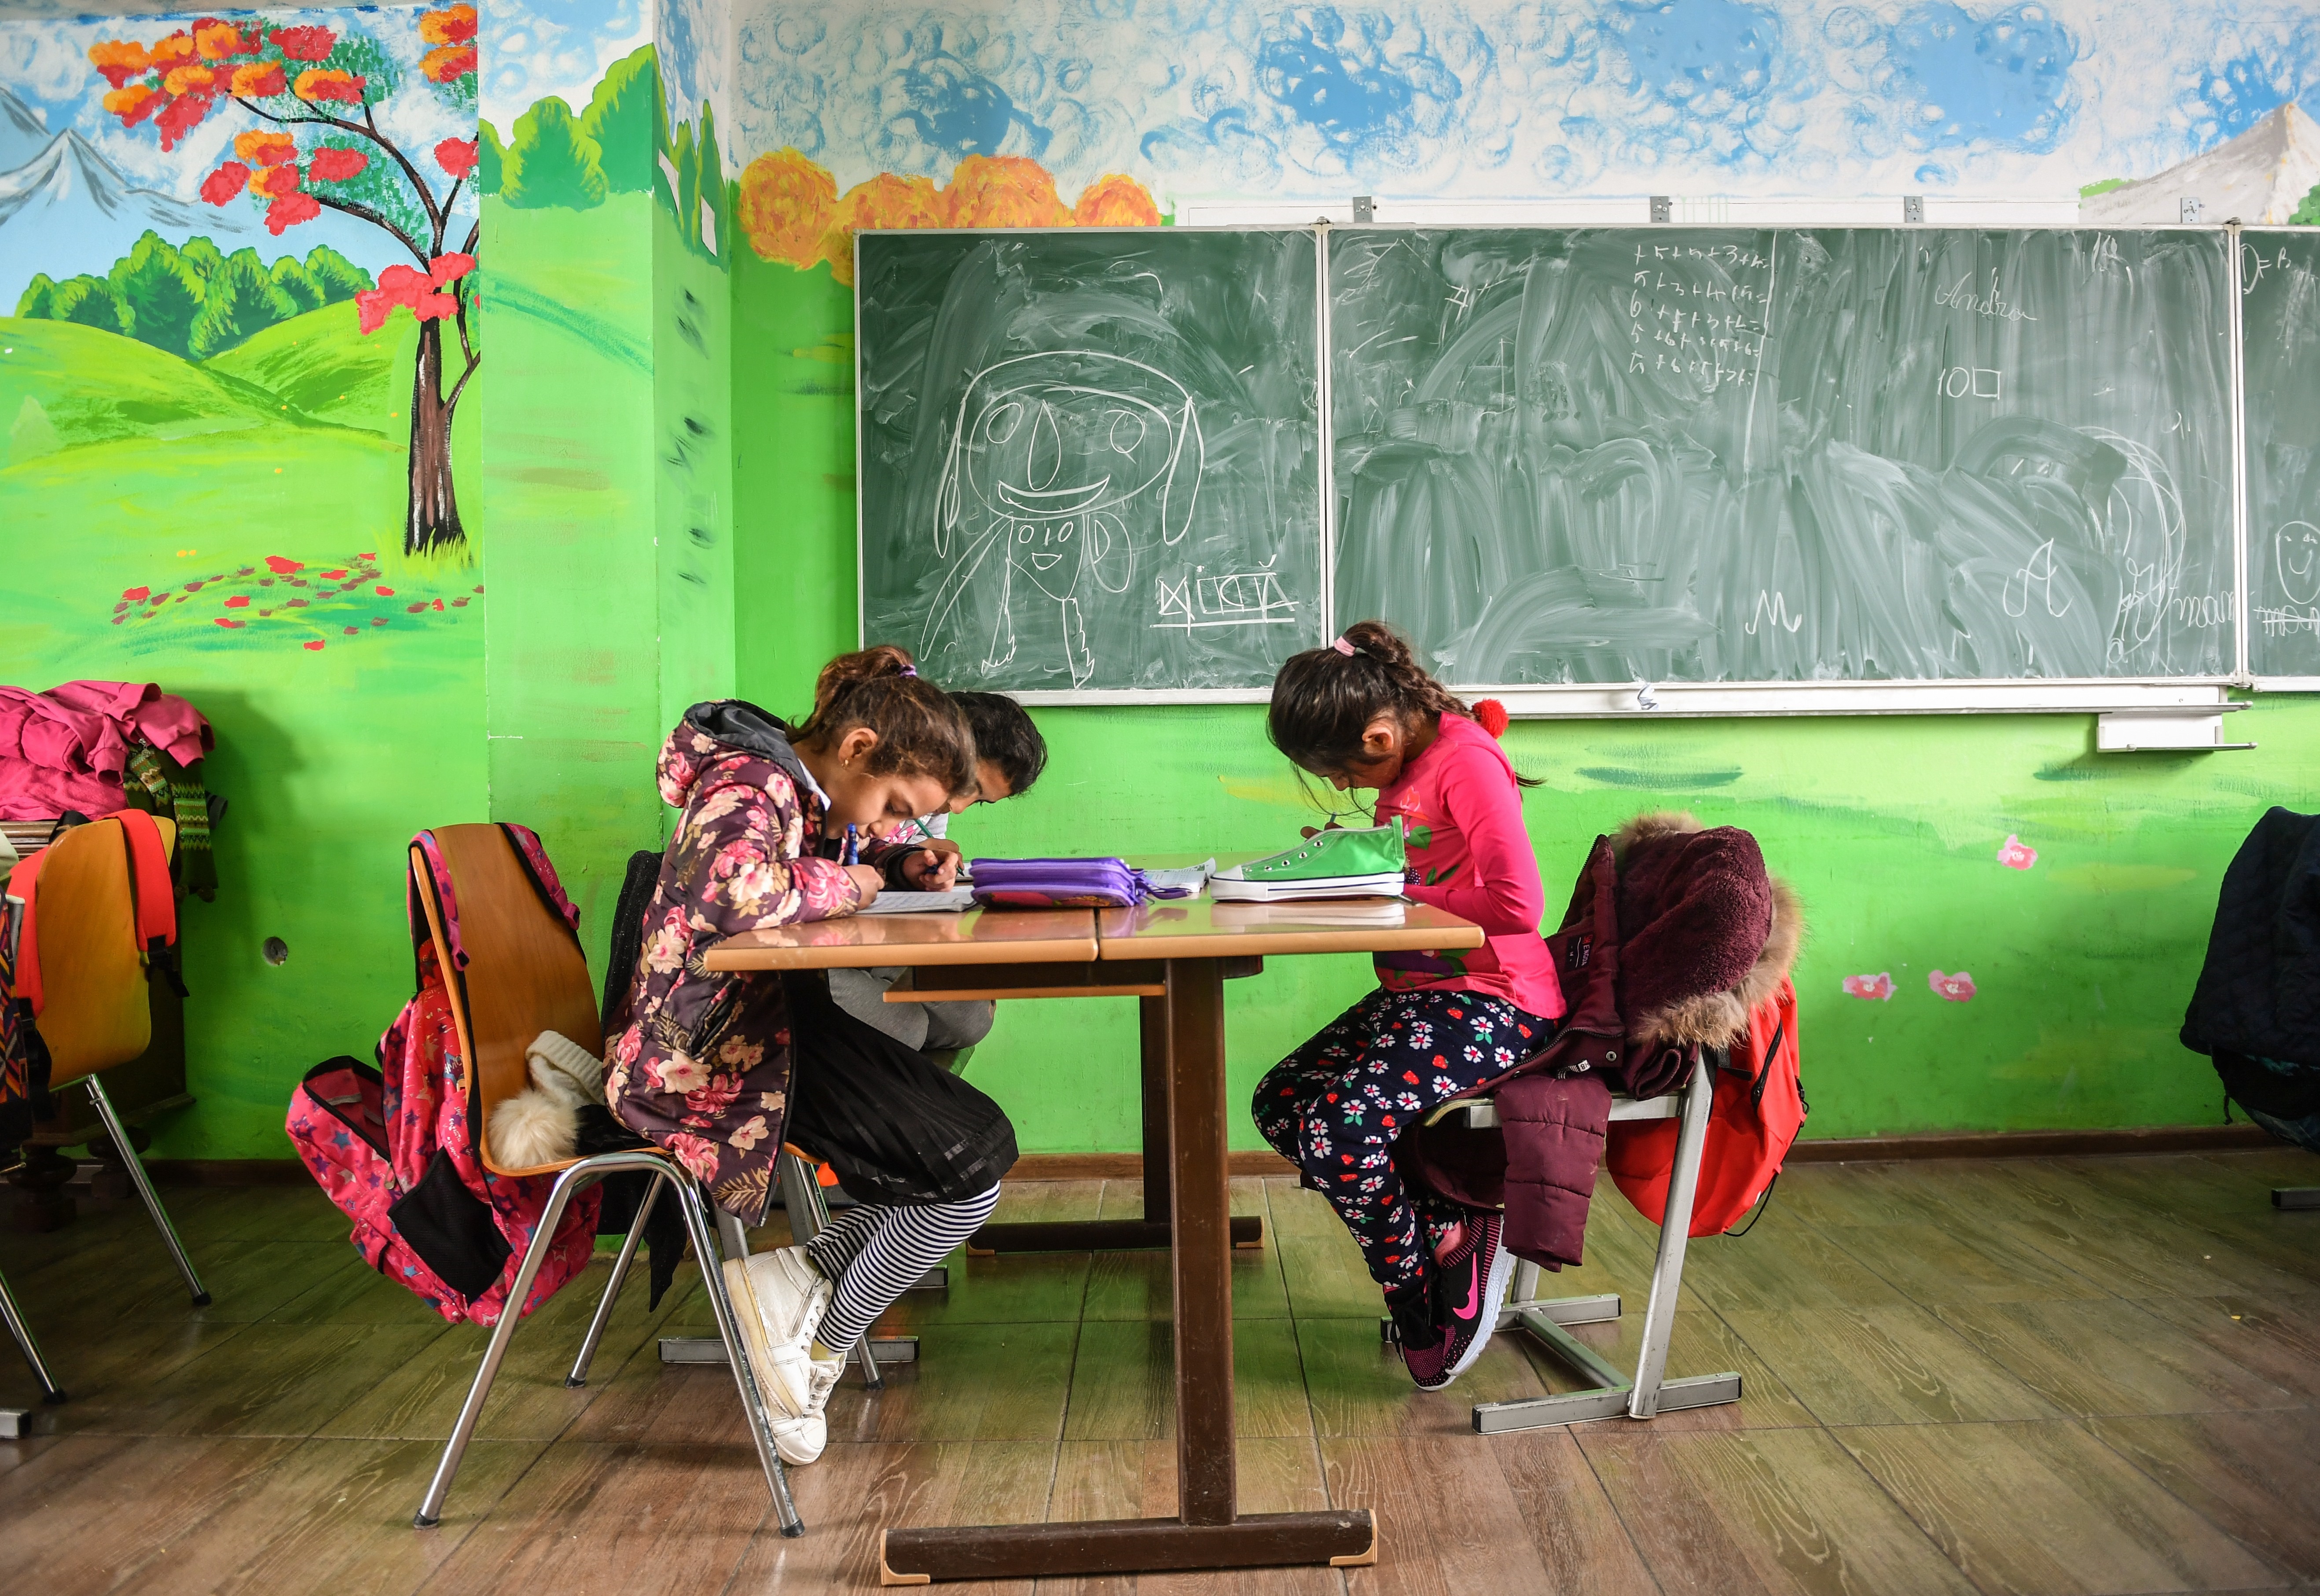 Szerdától bezárnak az iskolák és óvodák Romániában a koronavírus miatt